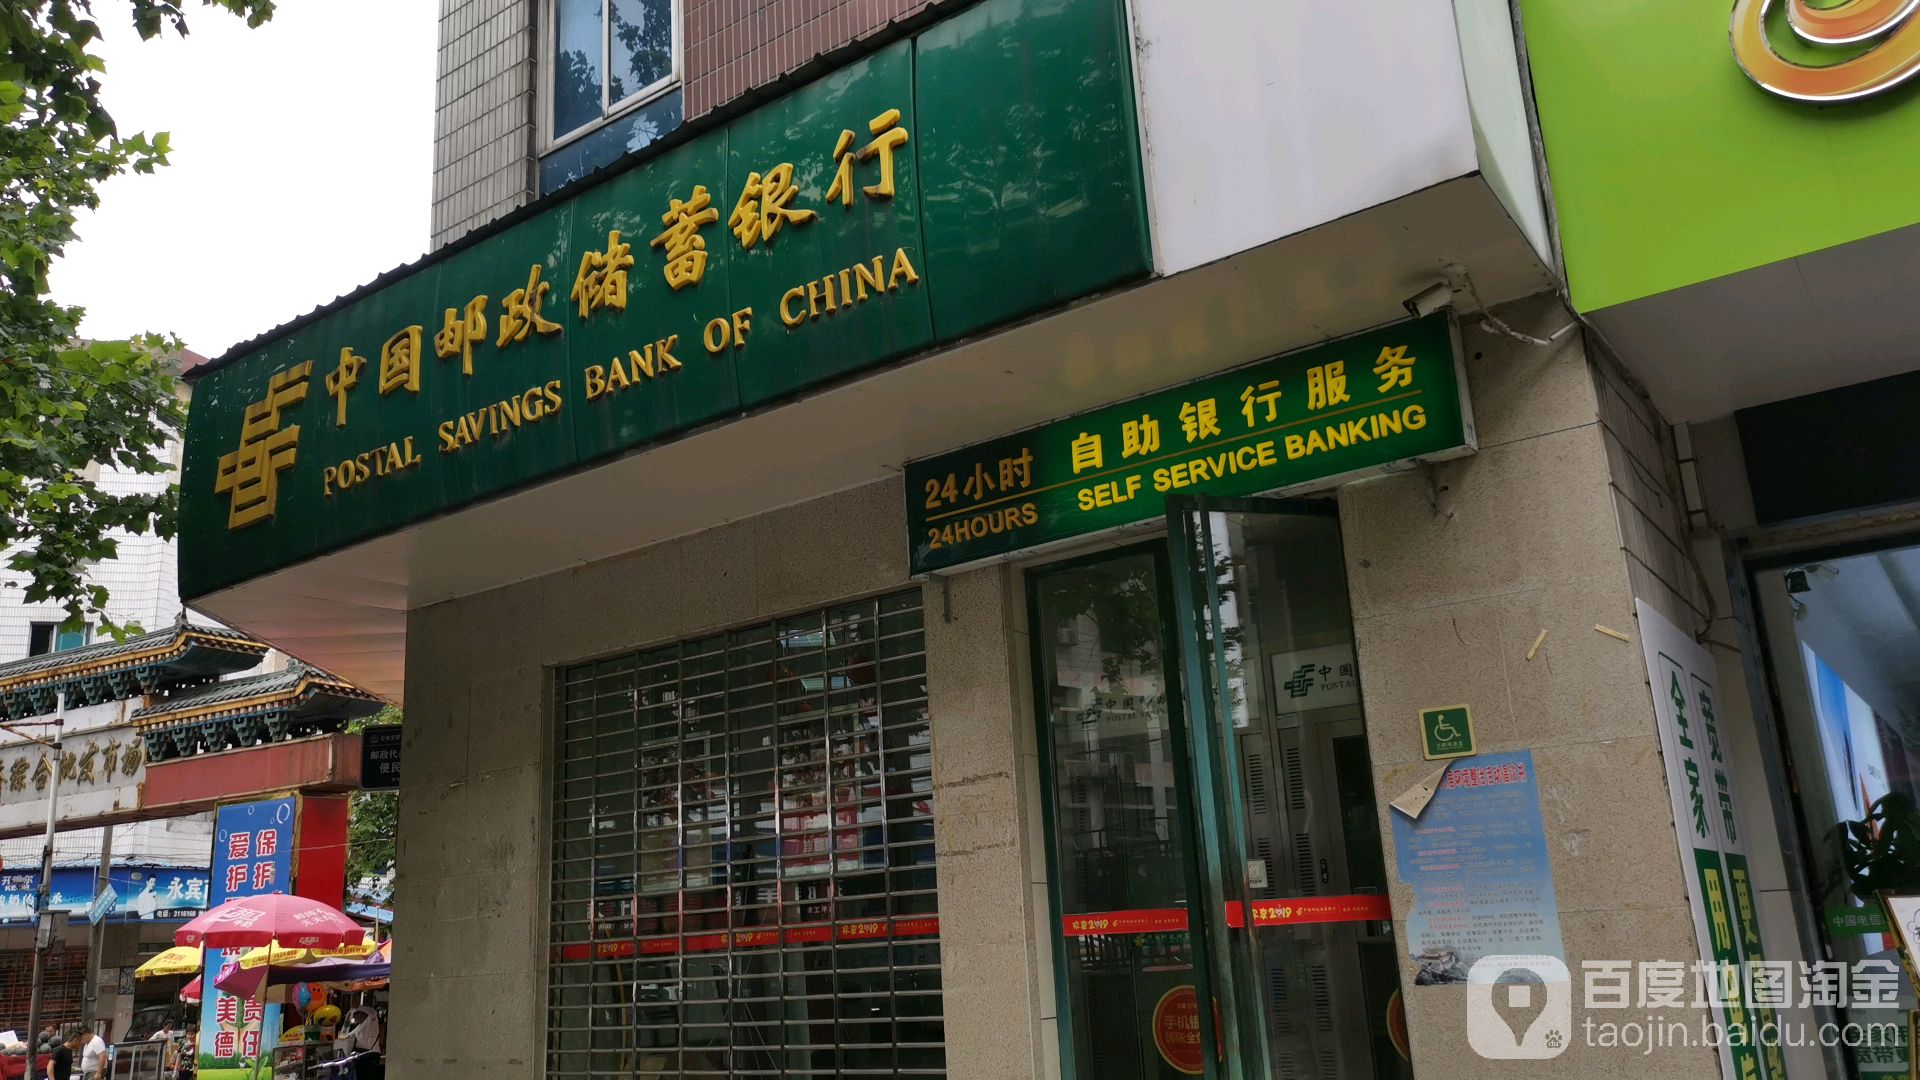 中国邮政储蓄银行24小时自助银行(解放路支行)